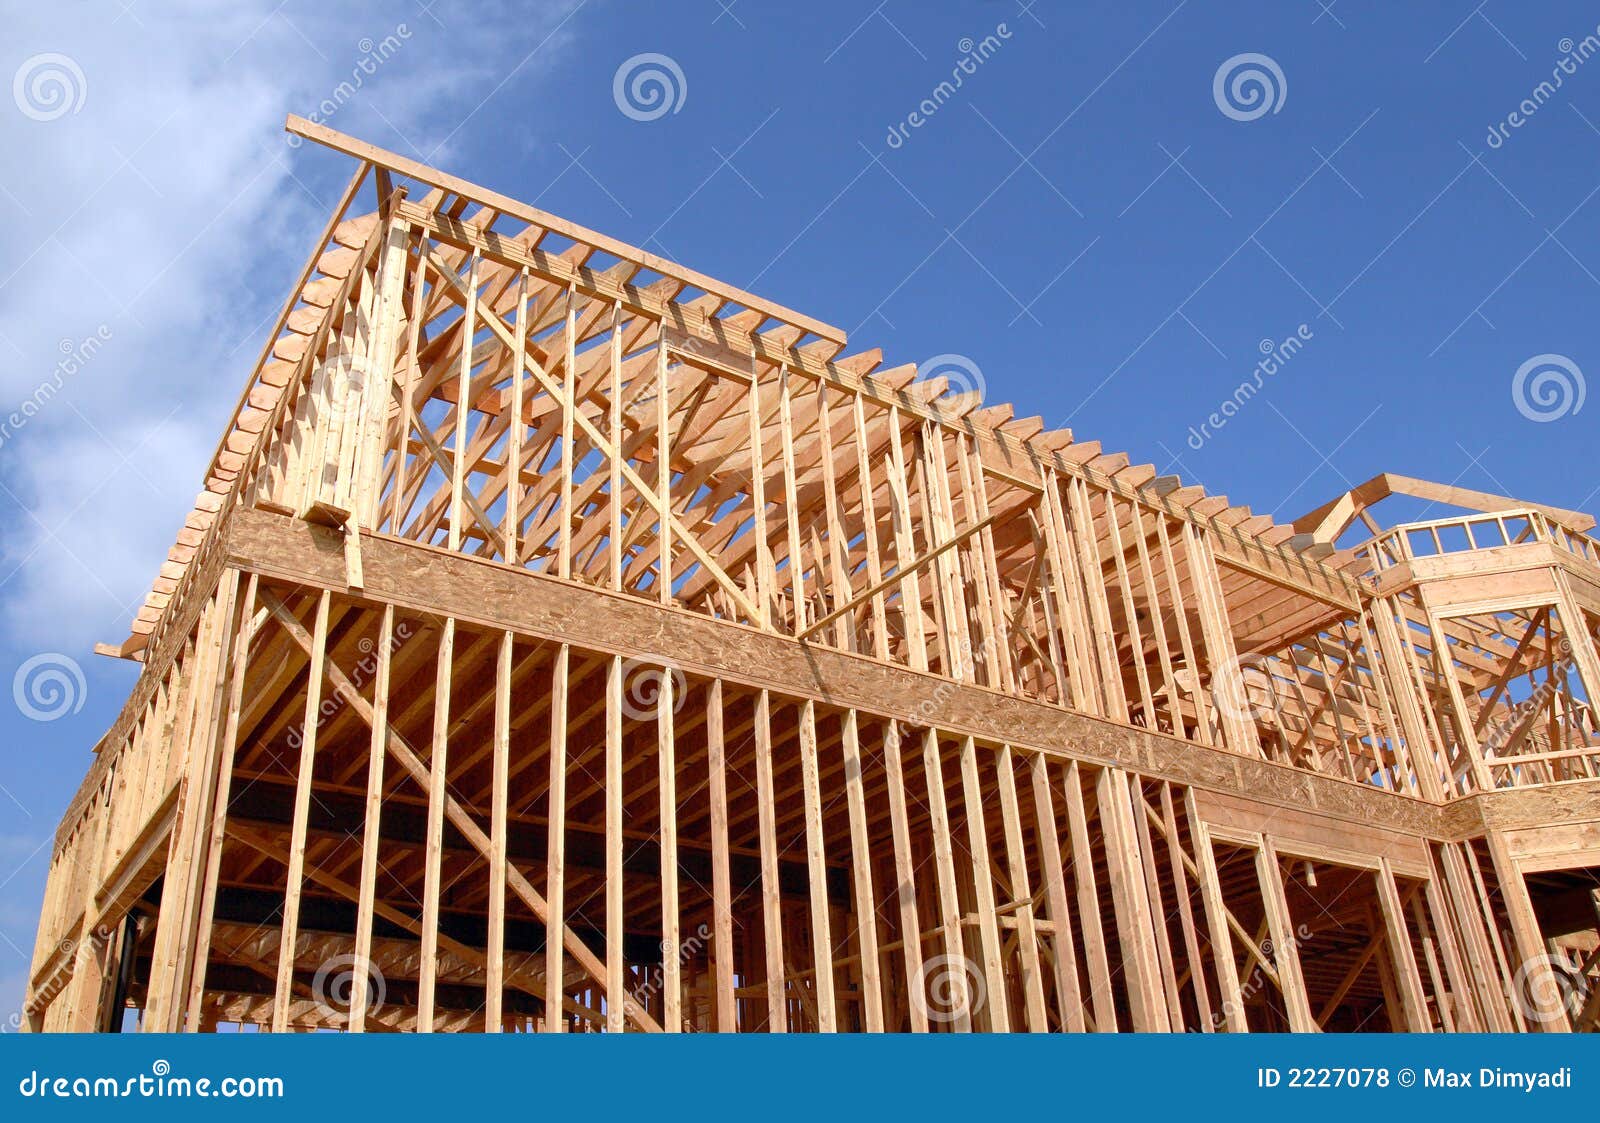 house-wooden-frame-2227078.jpg